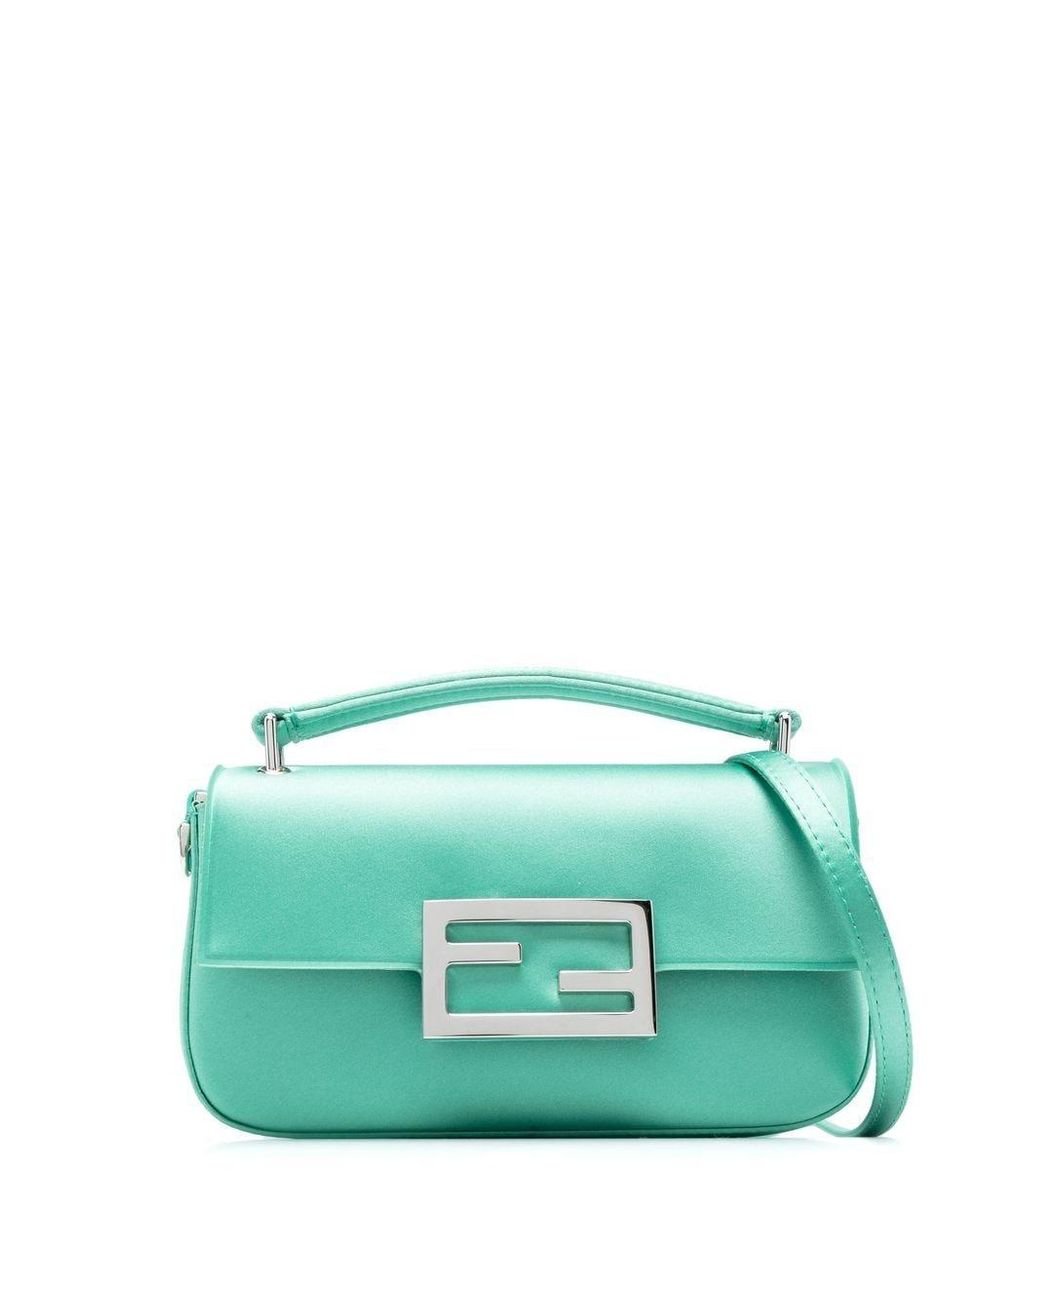 Fendi Baguette Phone Clutch Bag in Green